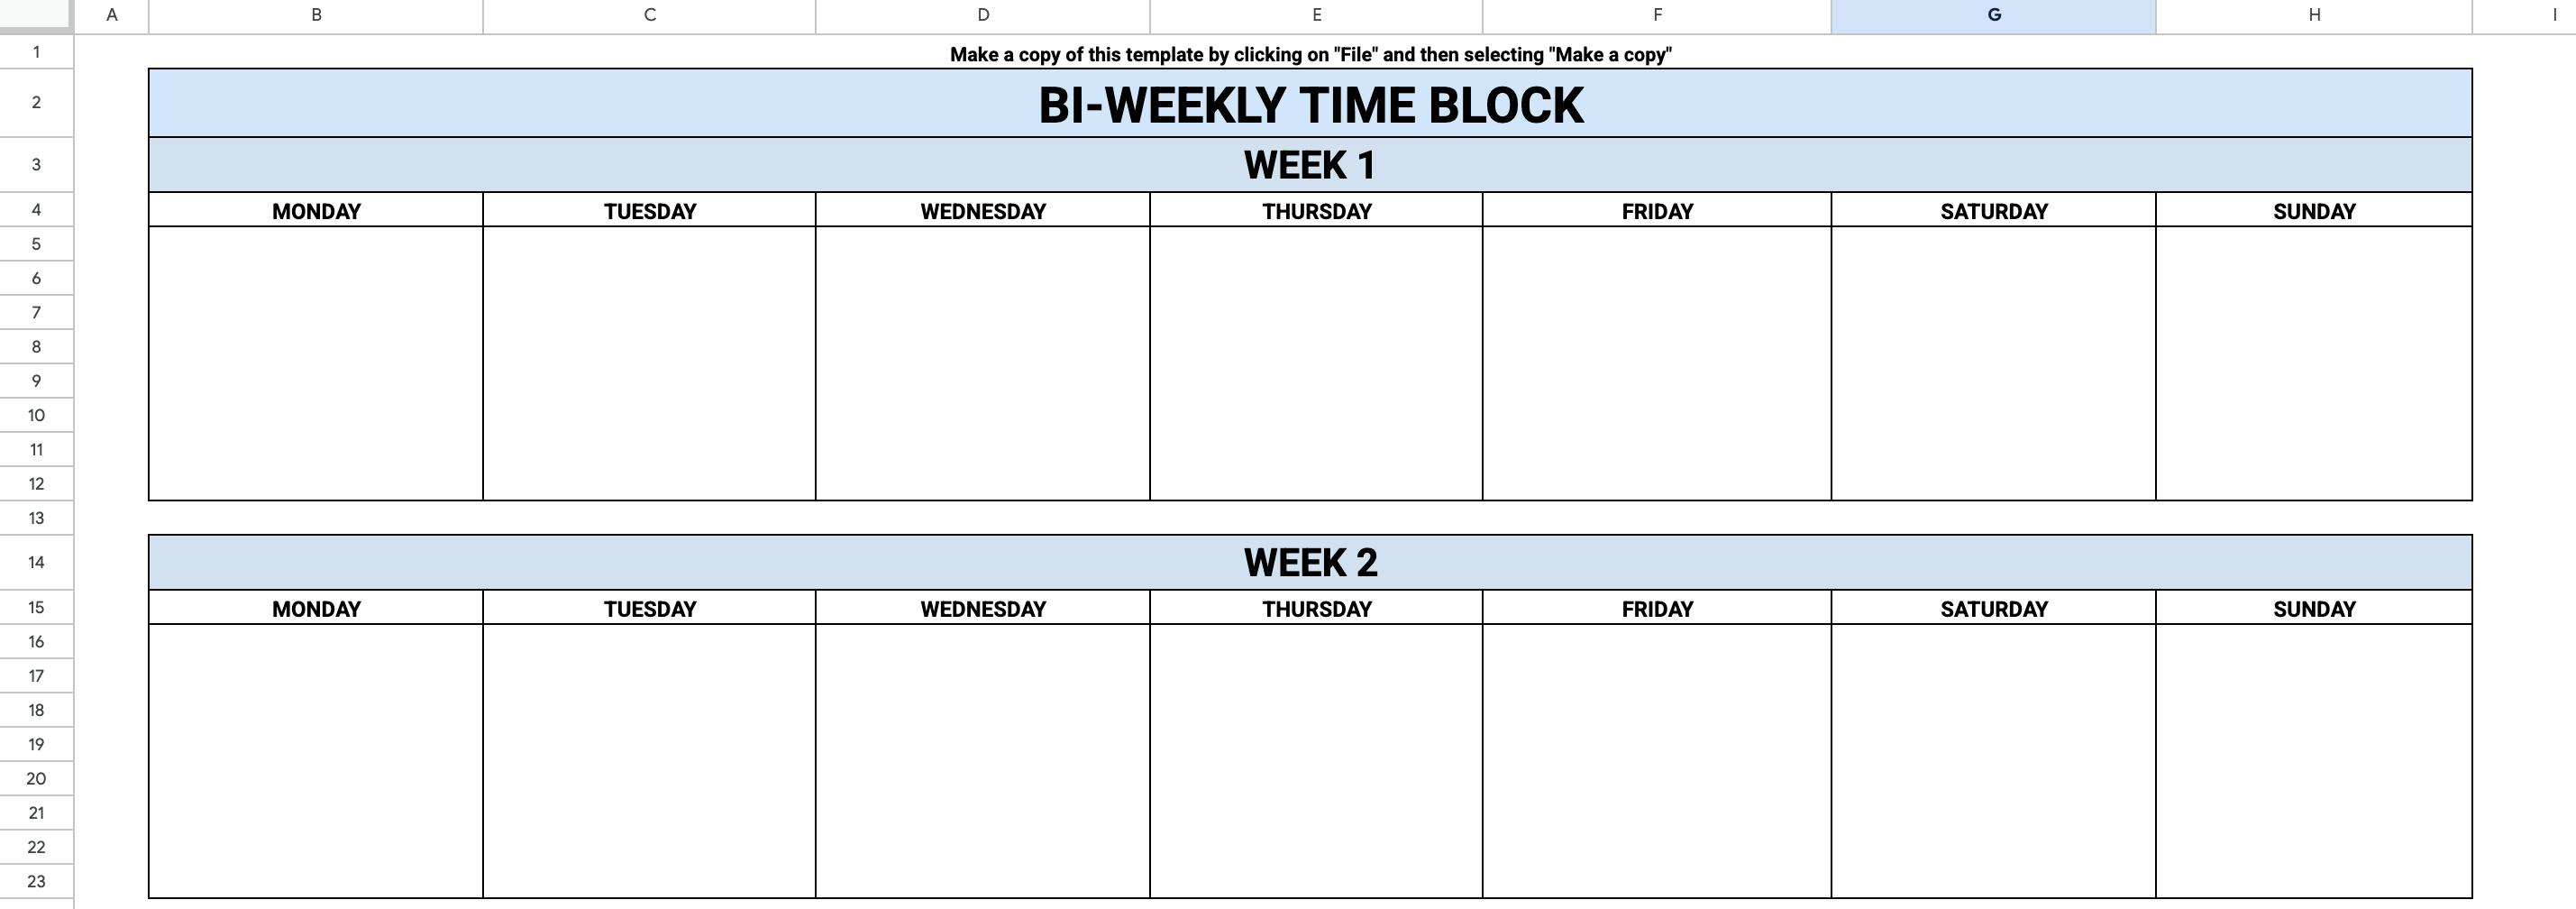 Bi-weekly time blocking template